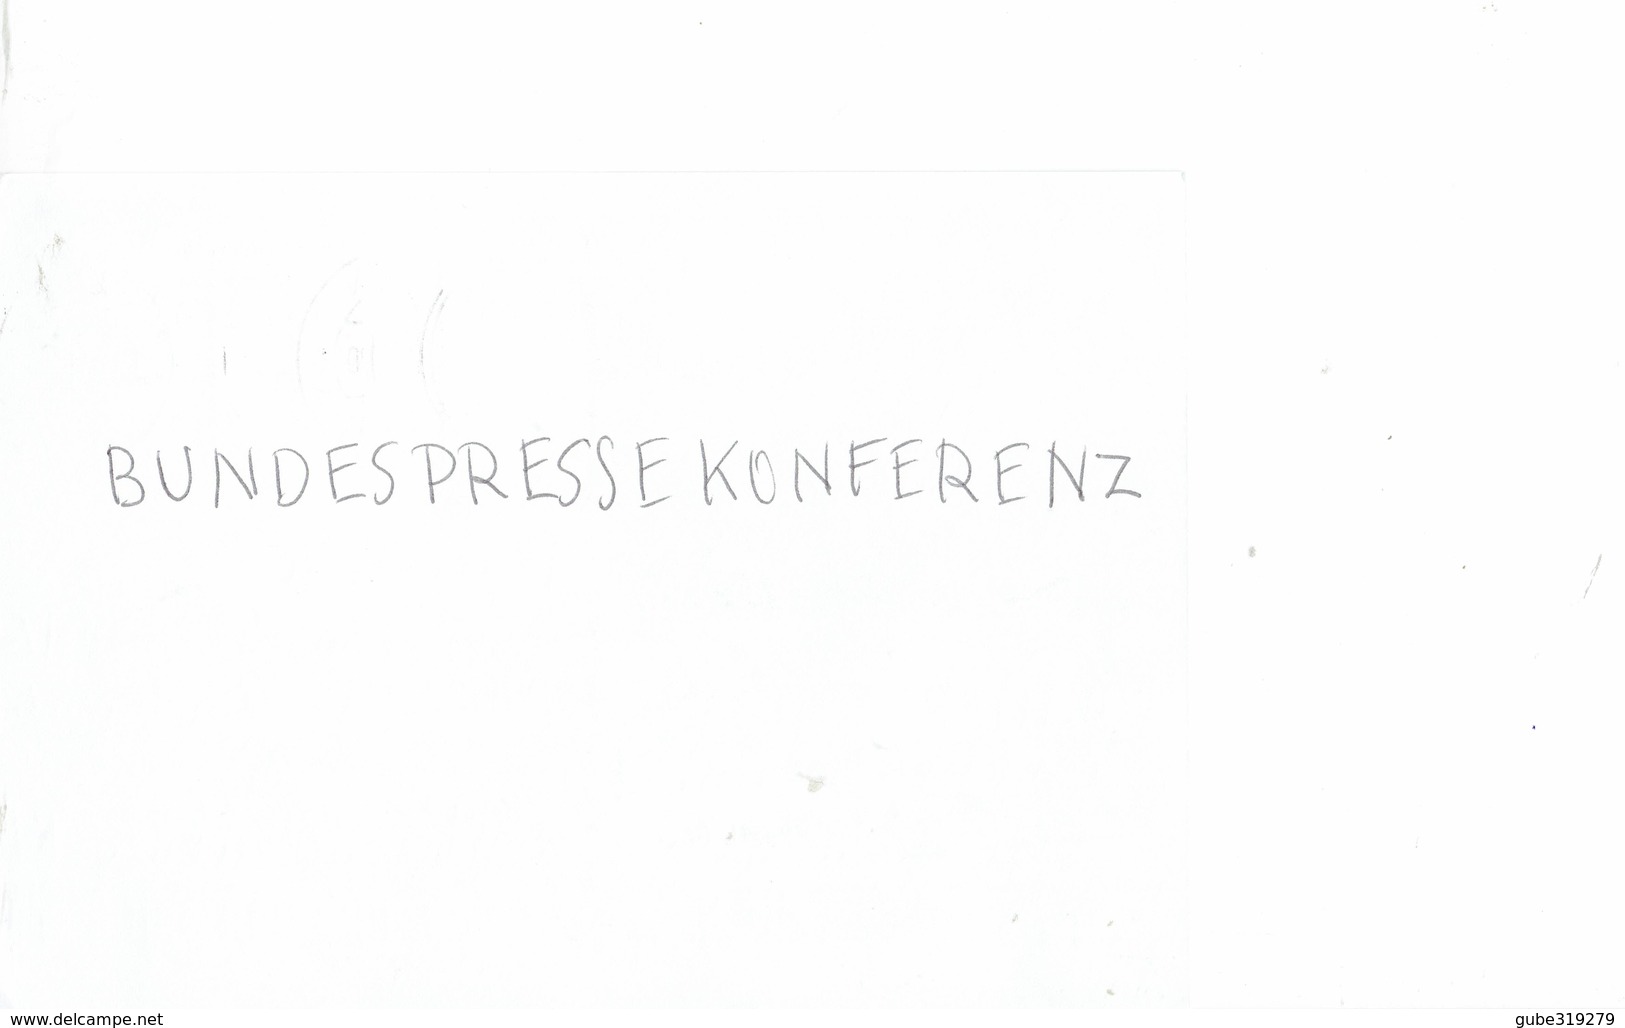 GERMANY 1983 - EMDEN -POSTKARTE -OBL  "SEEHAFENSTADT"9,11.1983 WITH OSTFRIESISCHES LANDESMUSEUM IMAGE  PRESTAMPED  0,60 - Emden